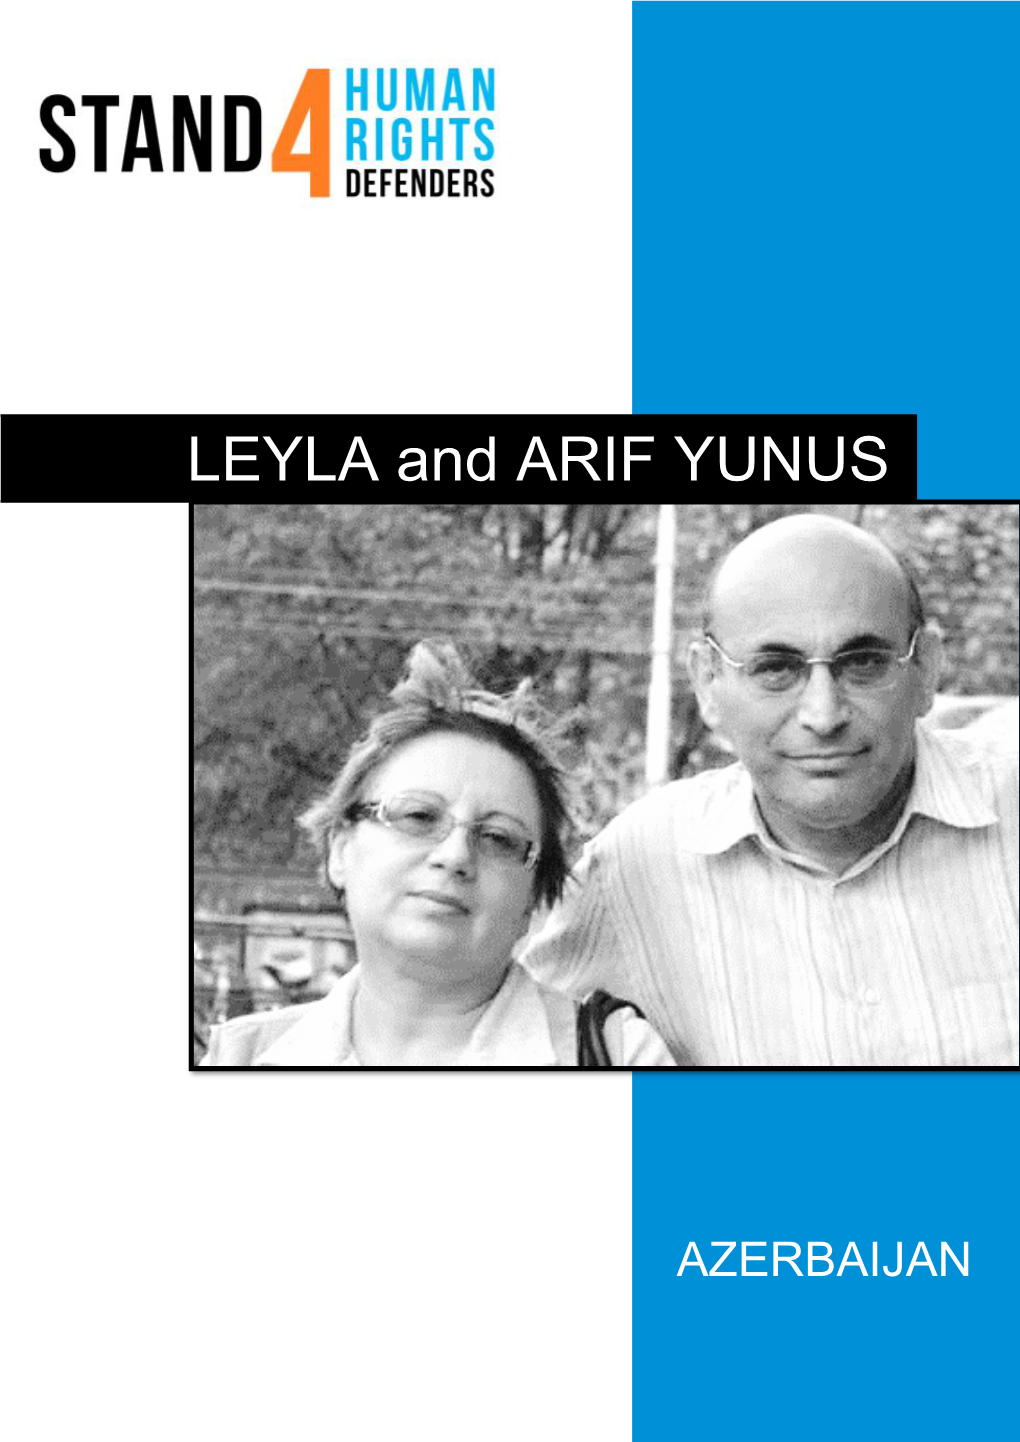 LEYLA and ARIF YUNUS